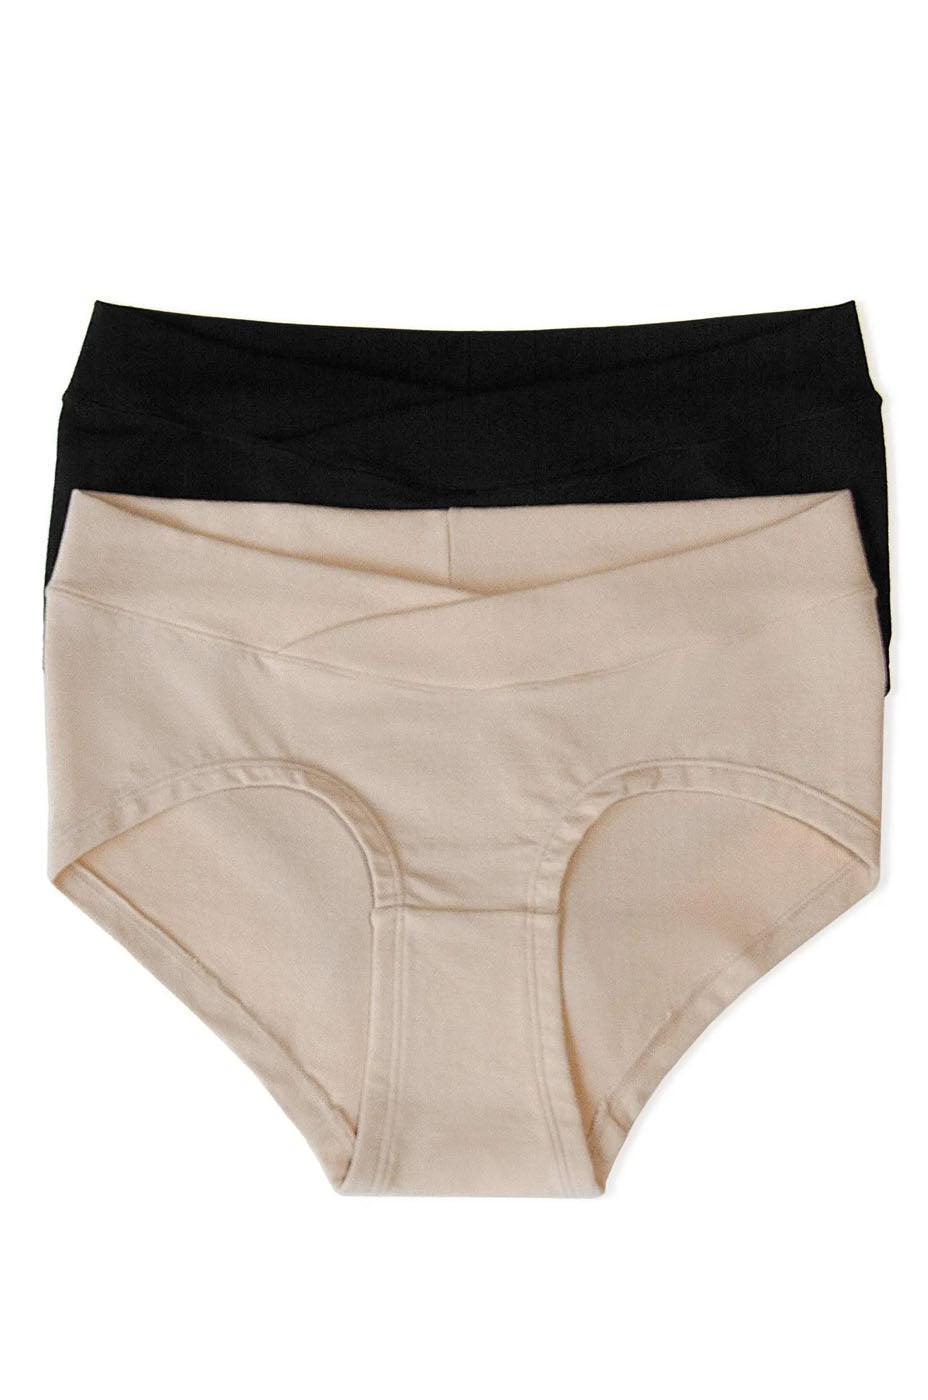 Postpartum Underwear  Pregnancy Underpants